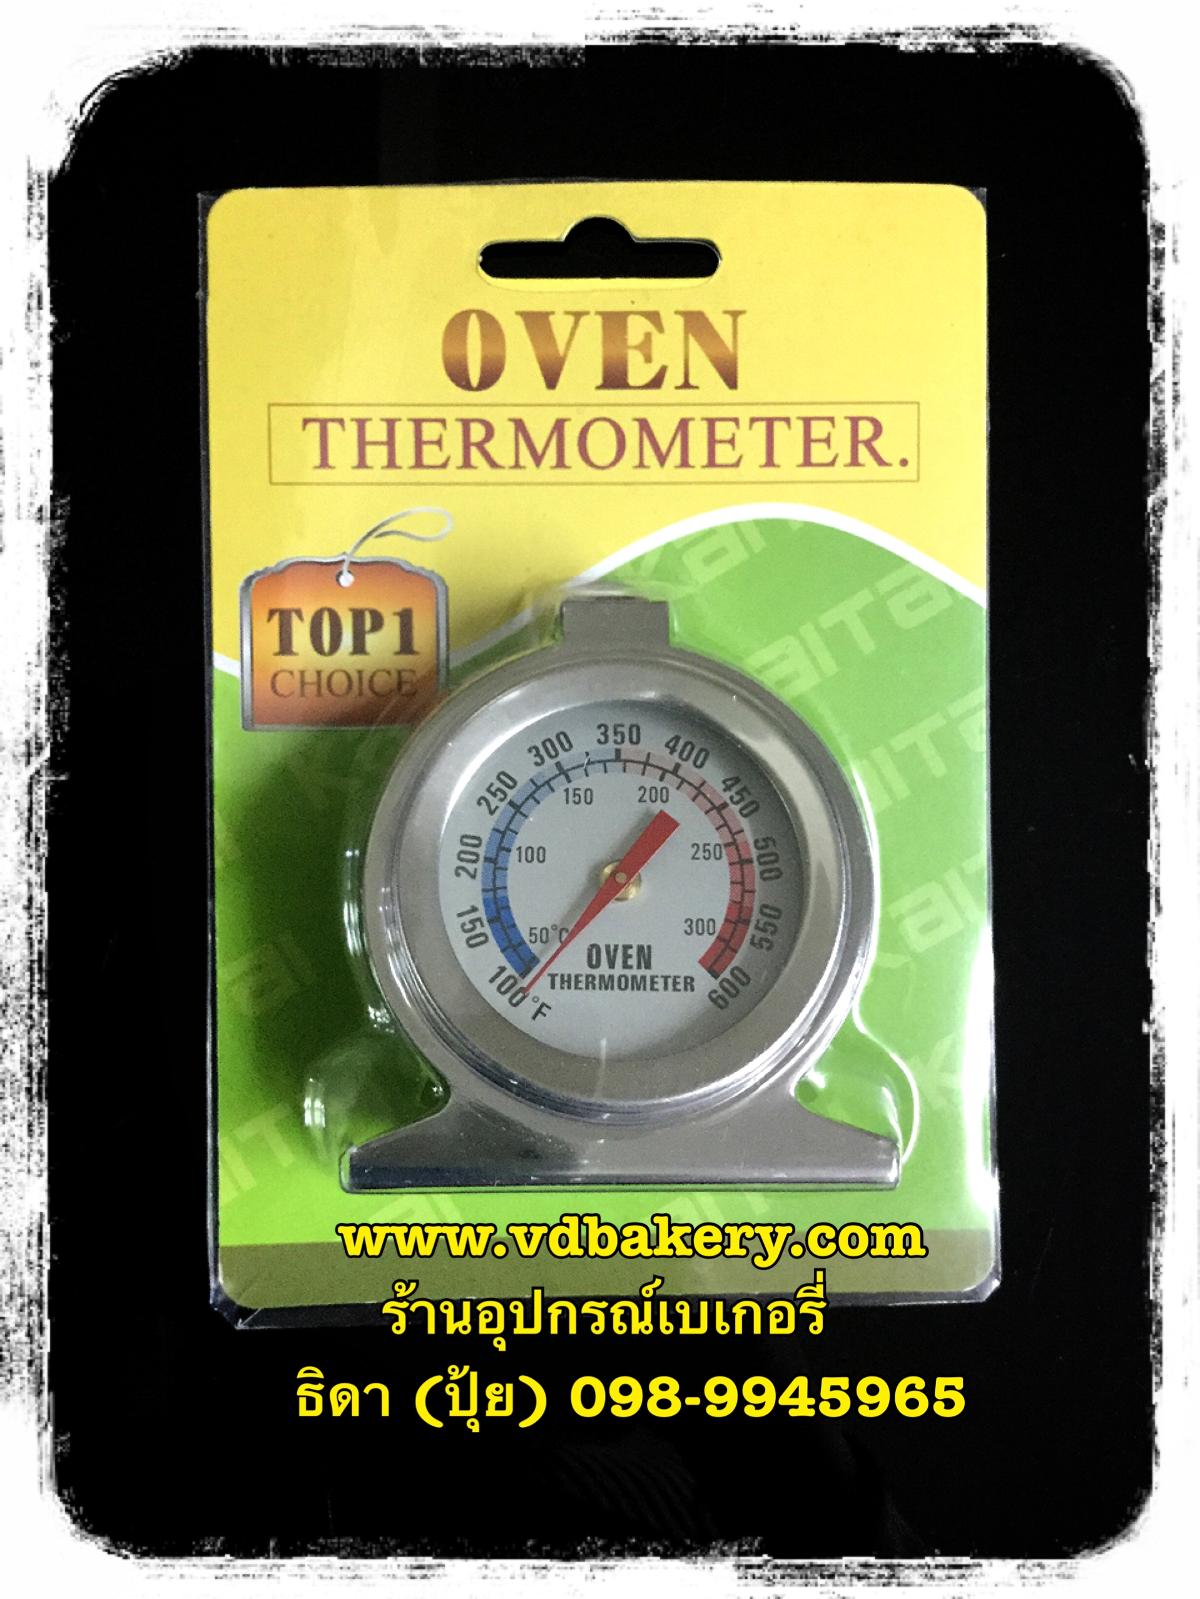 เกย์วัดอุณหภูมิ ยี่ห้อ Top 1(สำหรับใส่ในเตาอบ) (Oven Thermometer)